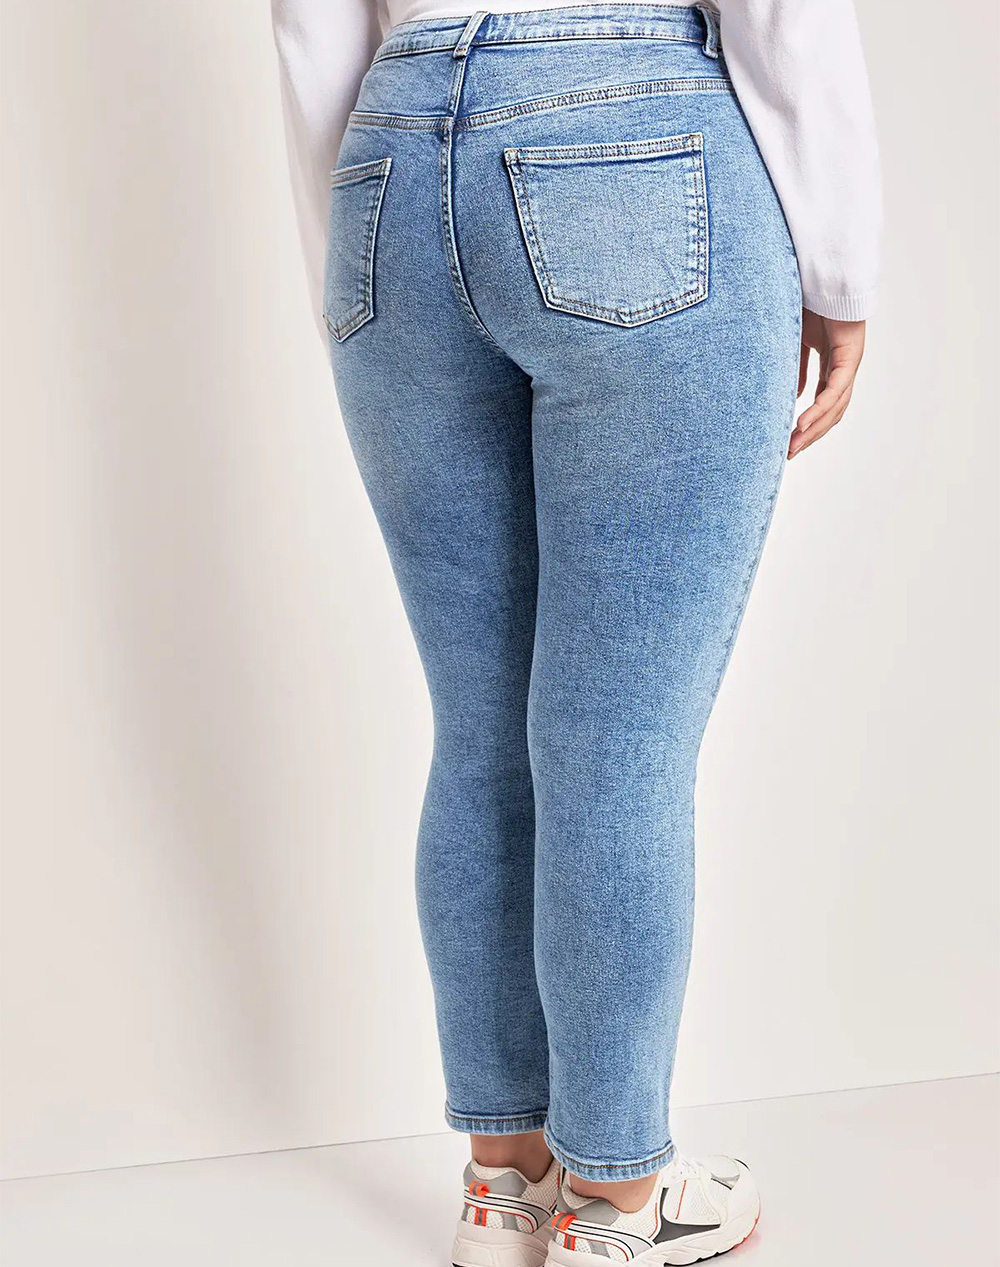 PARABITA Skinny fit jeans